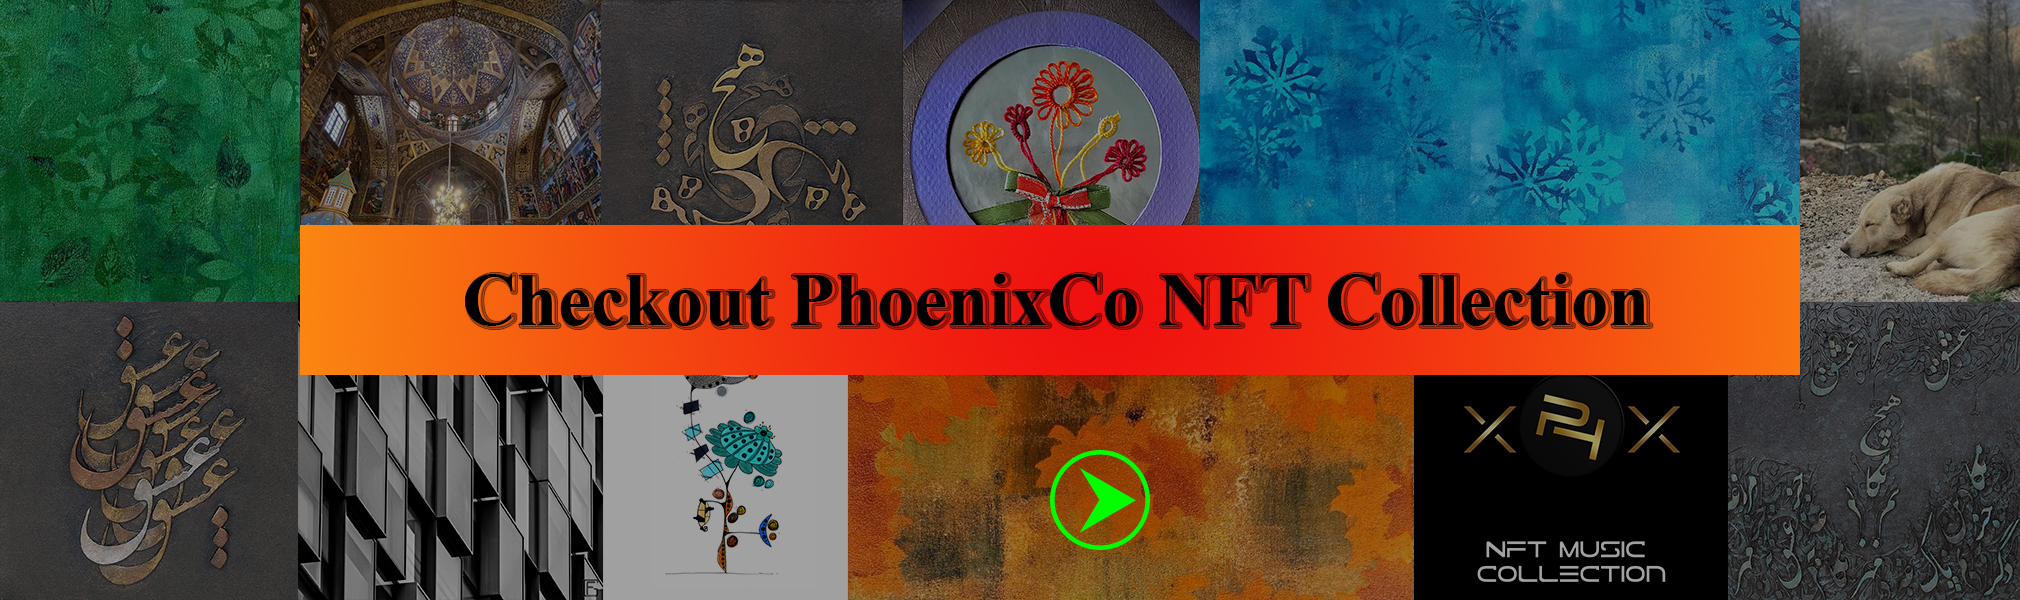 PhoenixCo NFT Collections